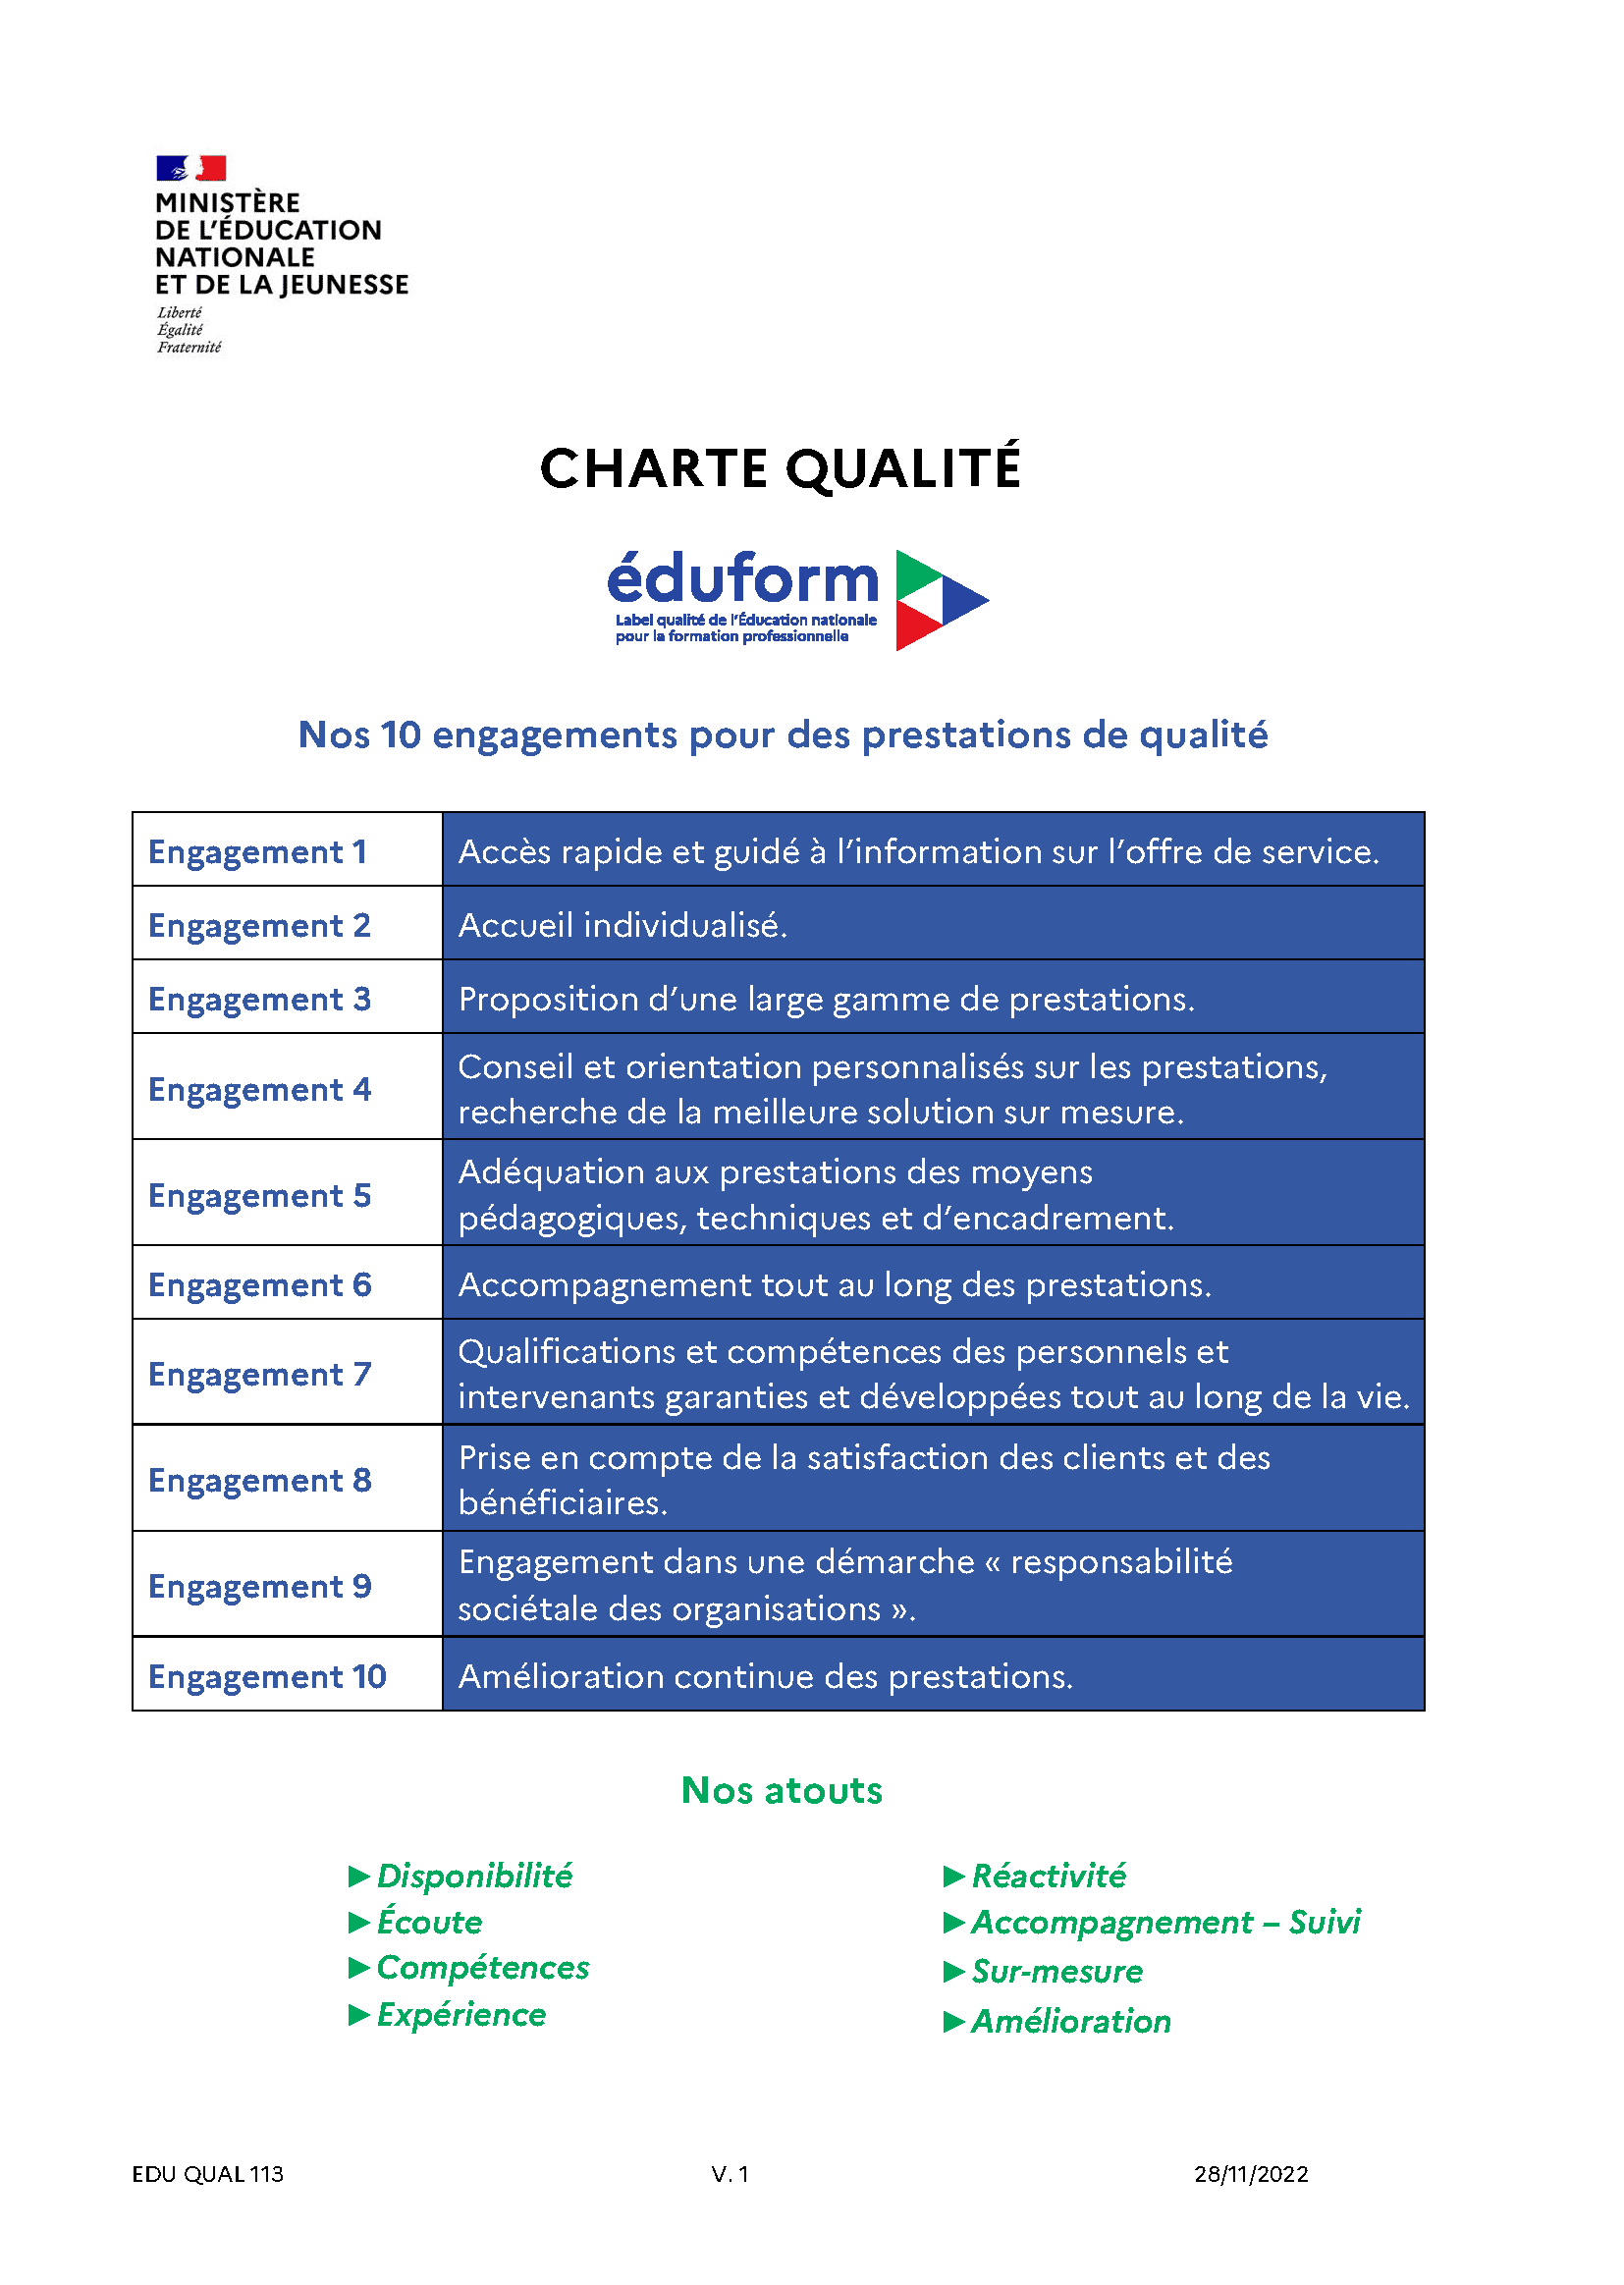 Charte qualité Qualiopi